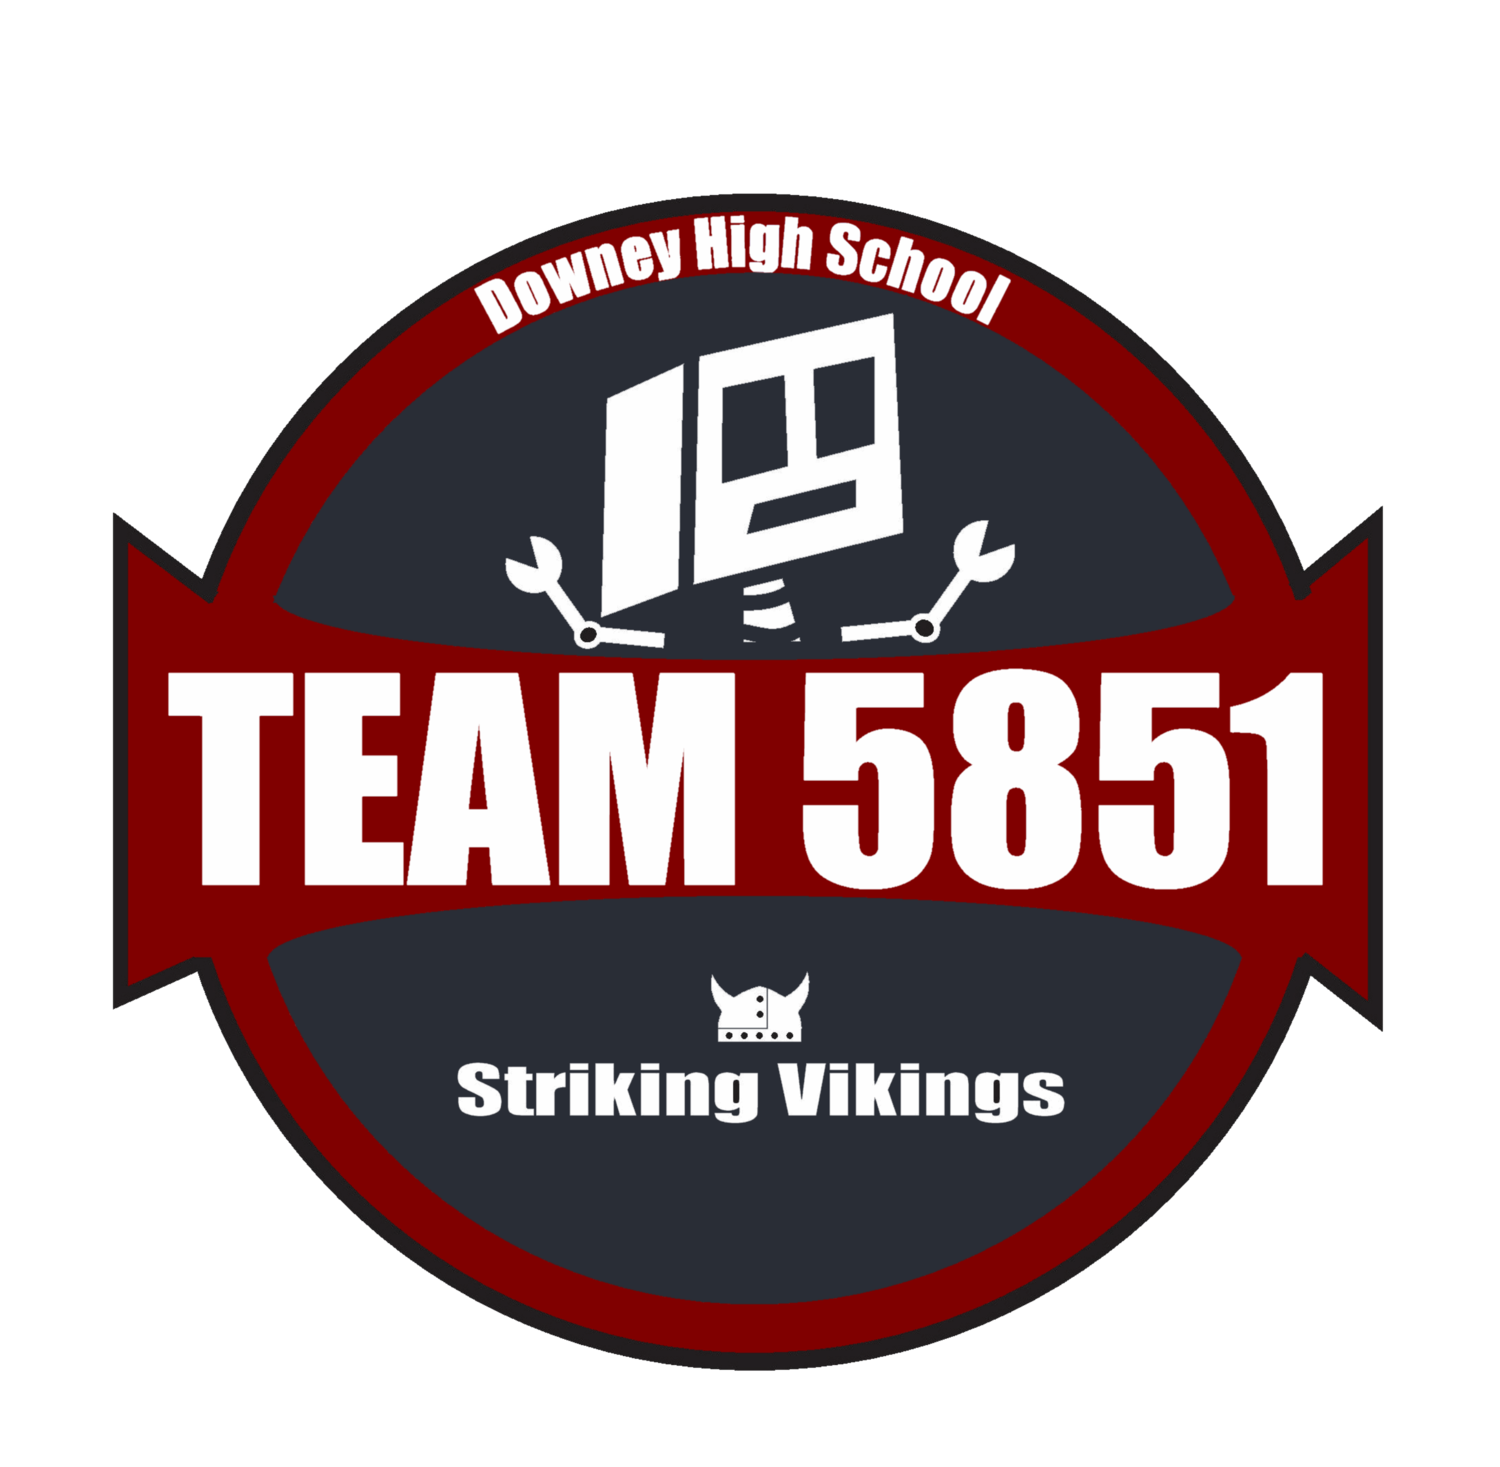 Team 5851 Striking Vikings